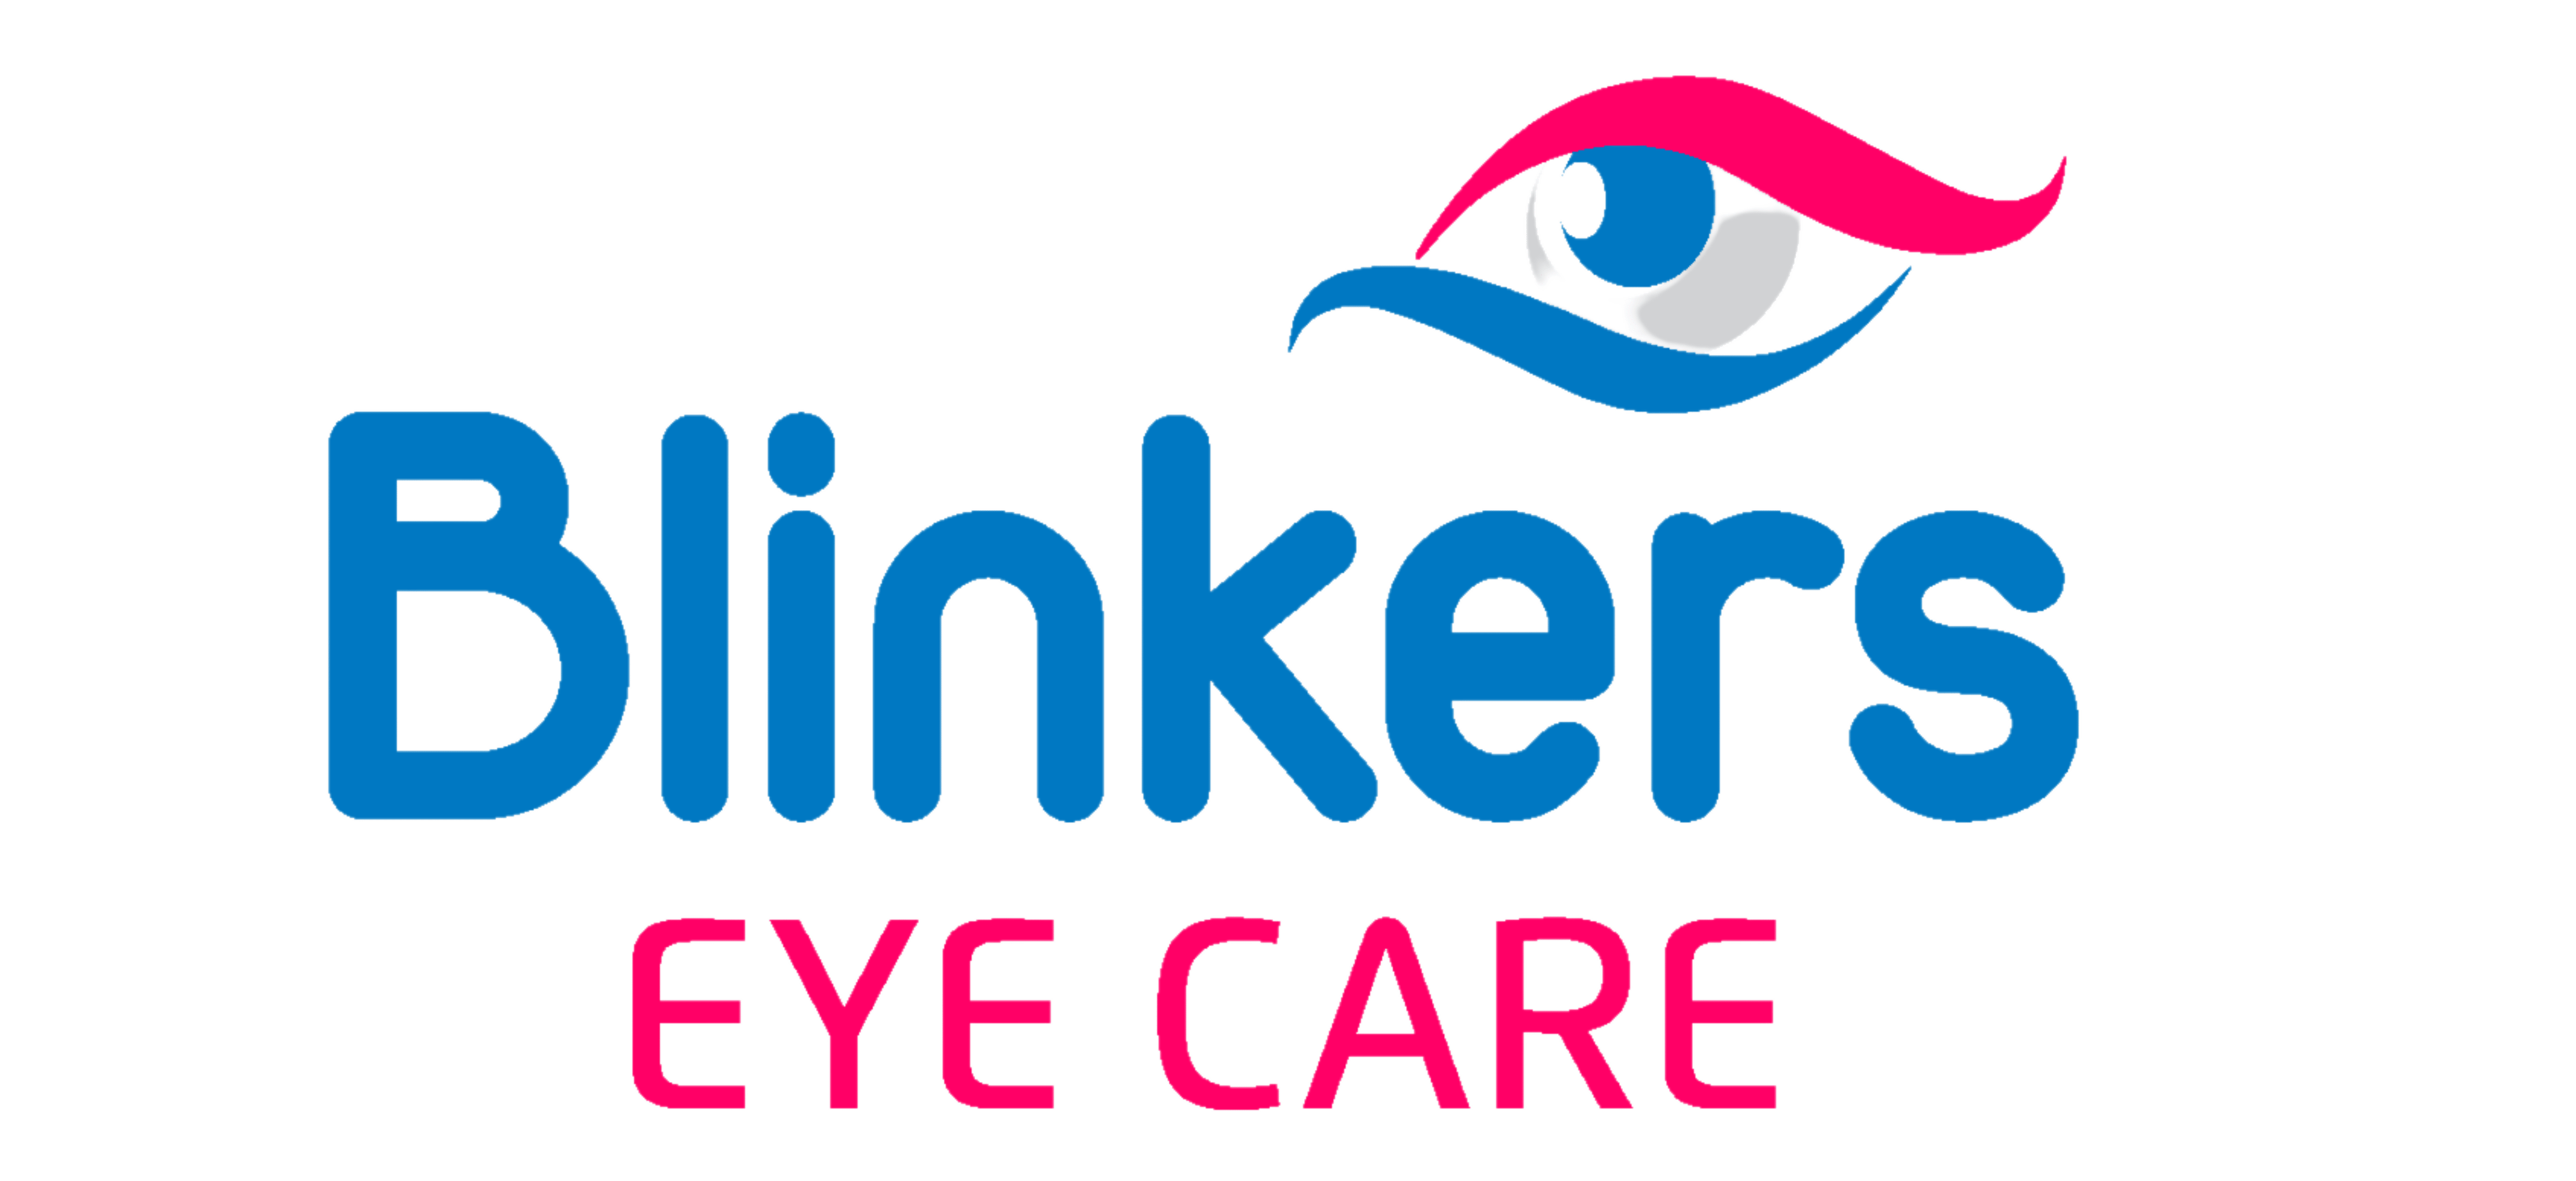 Blinkers Eyecare